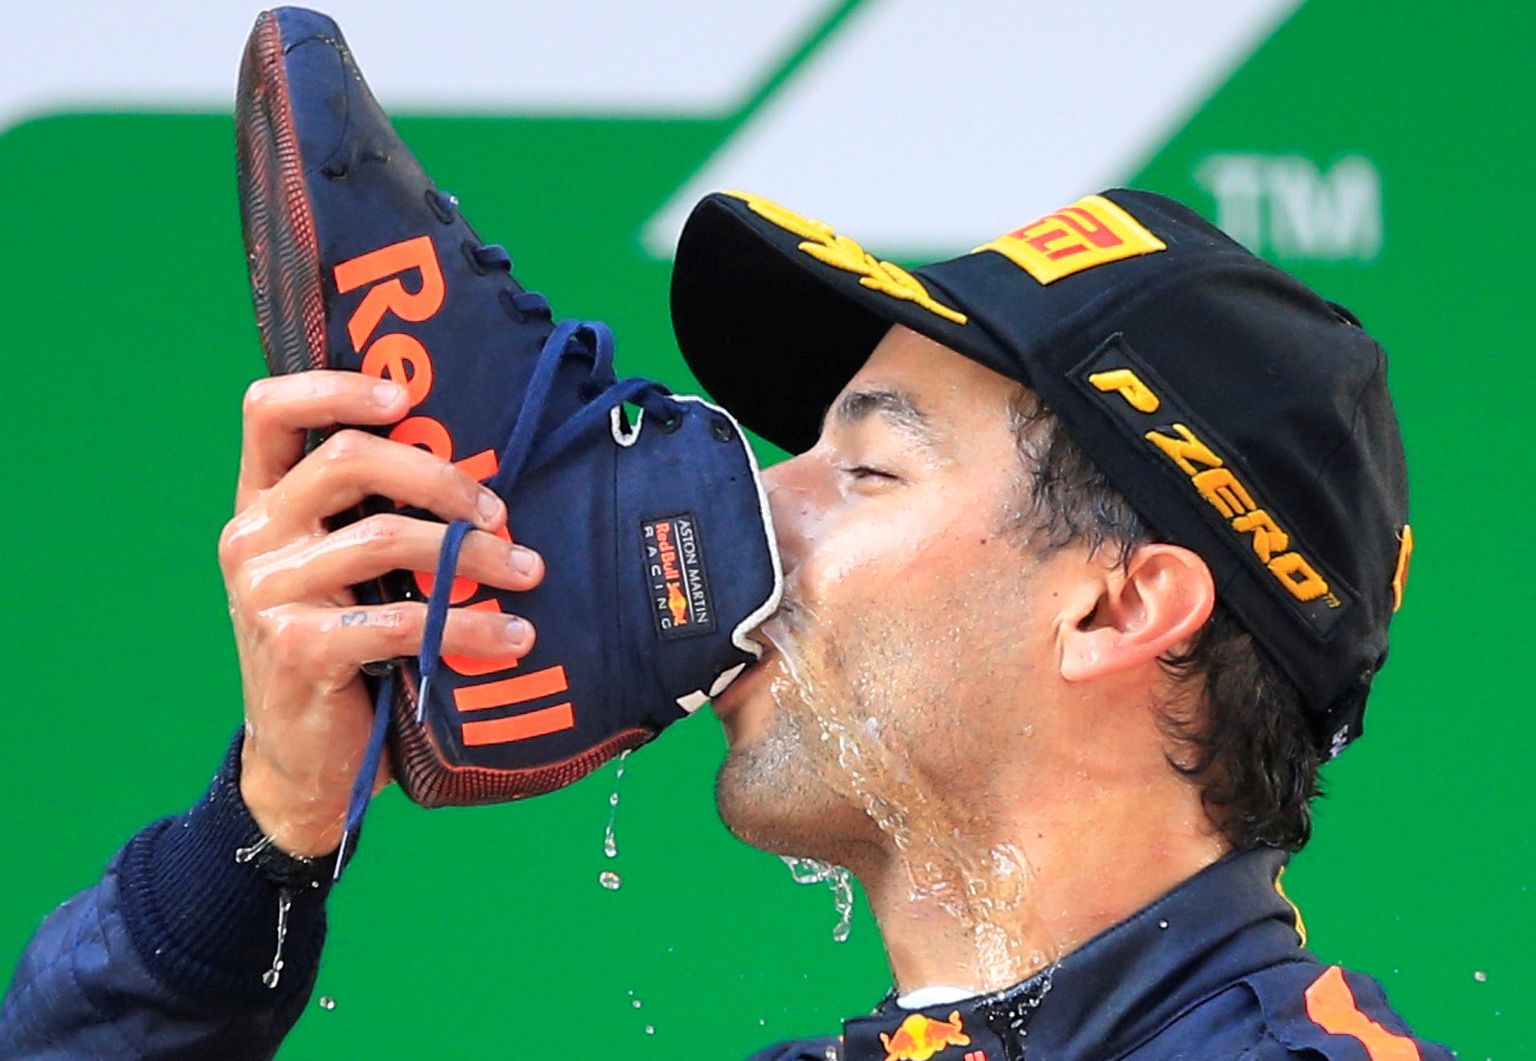 Daniel Ricciardo tähistab võite Austraalia joomiskombega, mis seisneb alkoholi jalanõust rüüpamises. Erandiks polnud ka Hiina Grand Prix - esikoha puhul koukis Ricciardo sussi jalast, täitis mullijoogiga ja lasi hea maitsta.